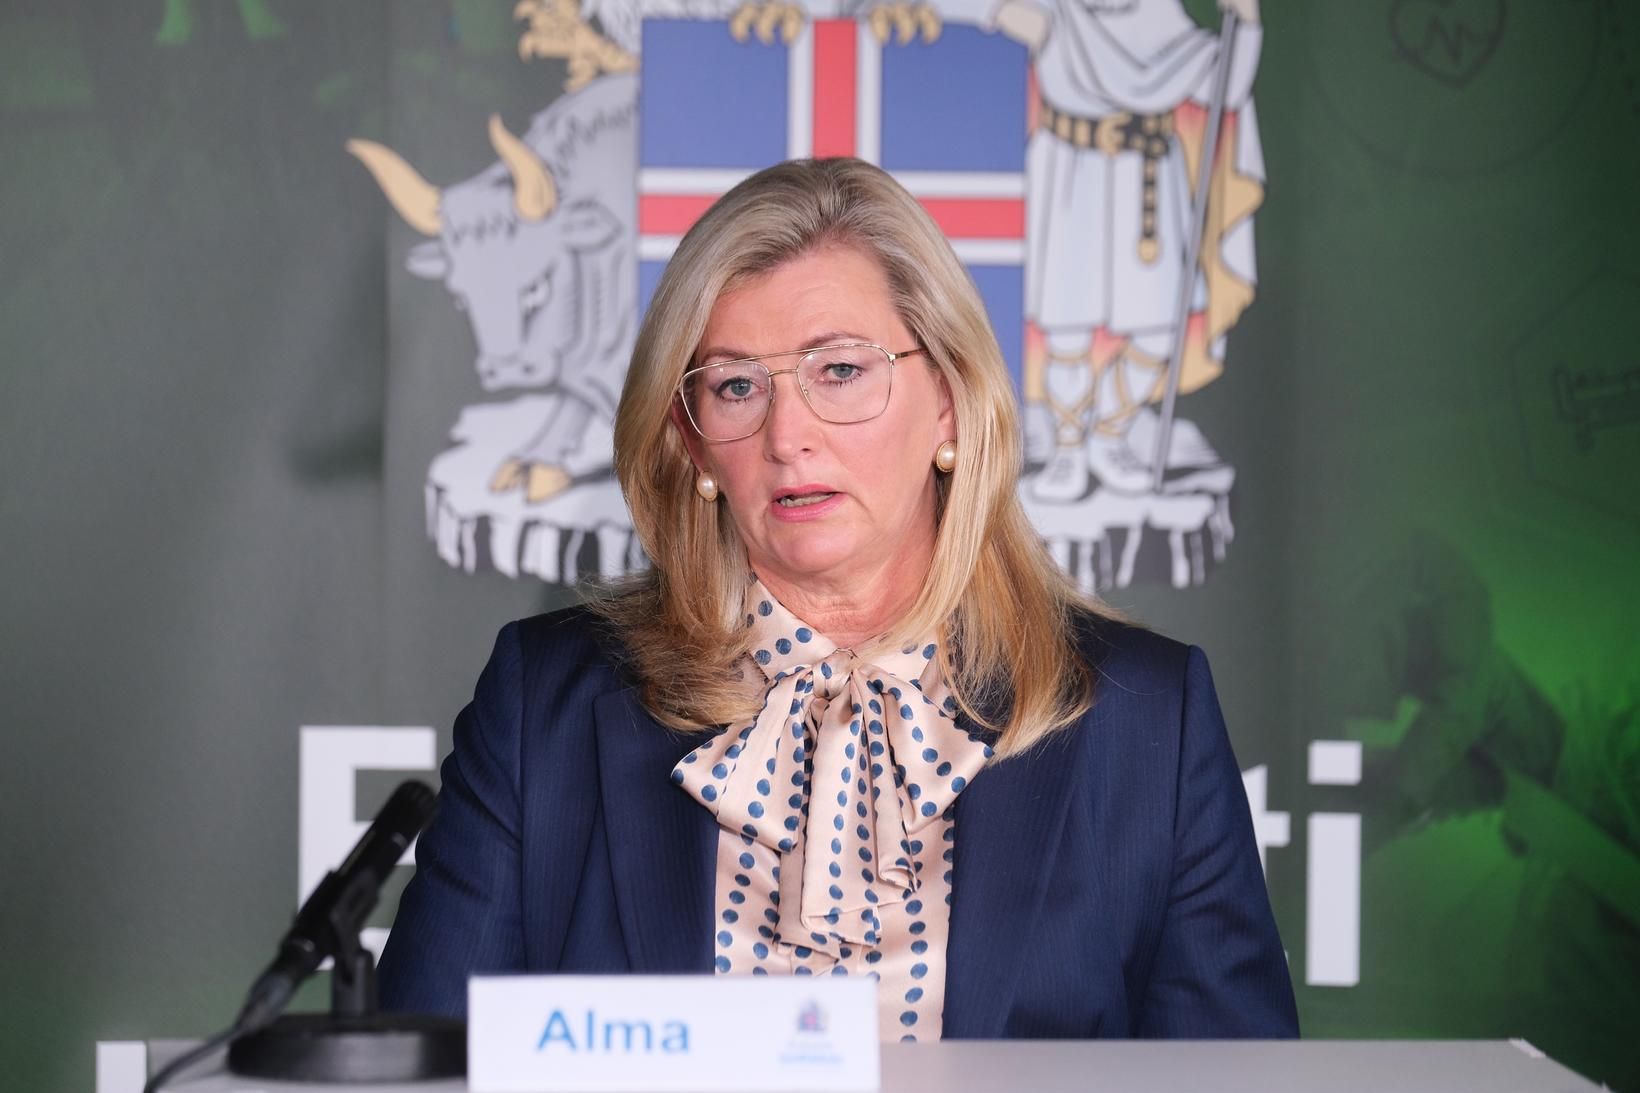 Alma Möller landlæknir.